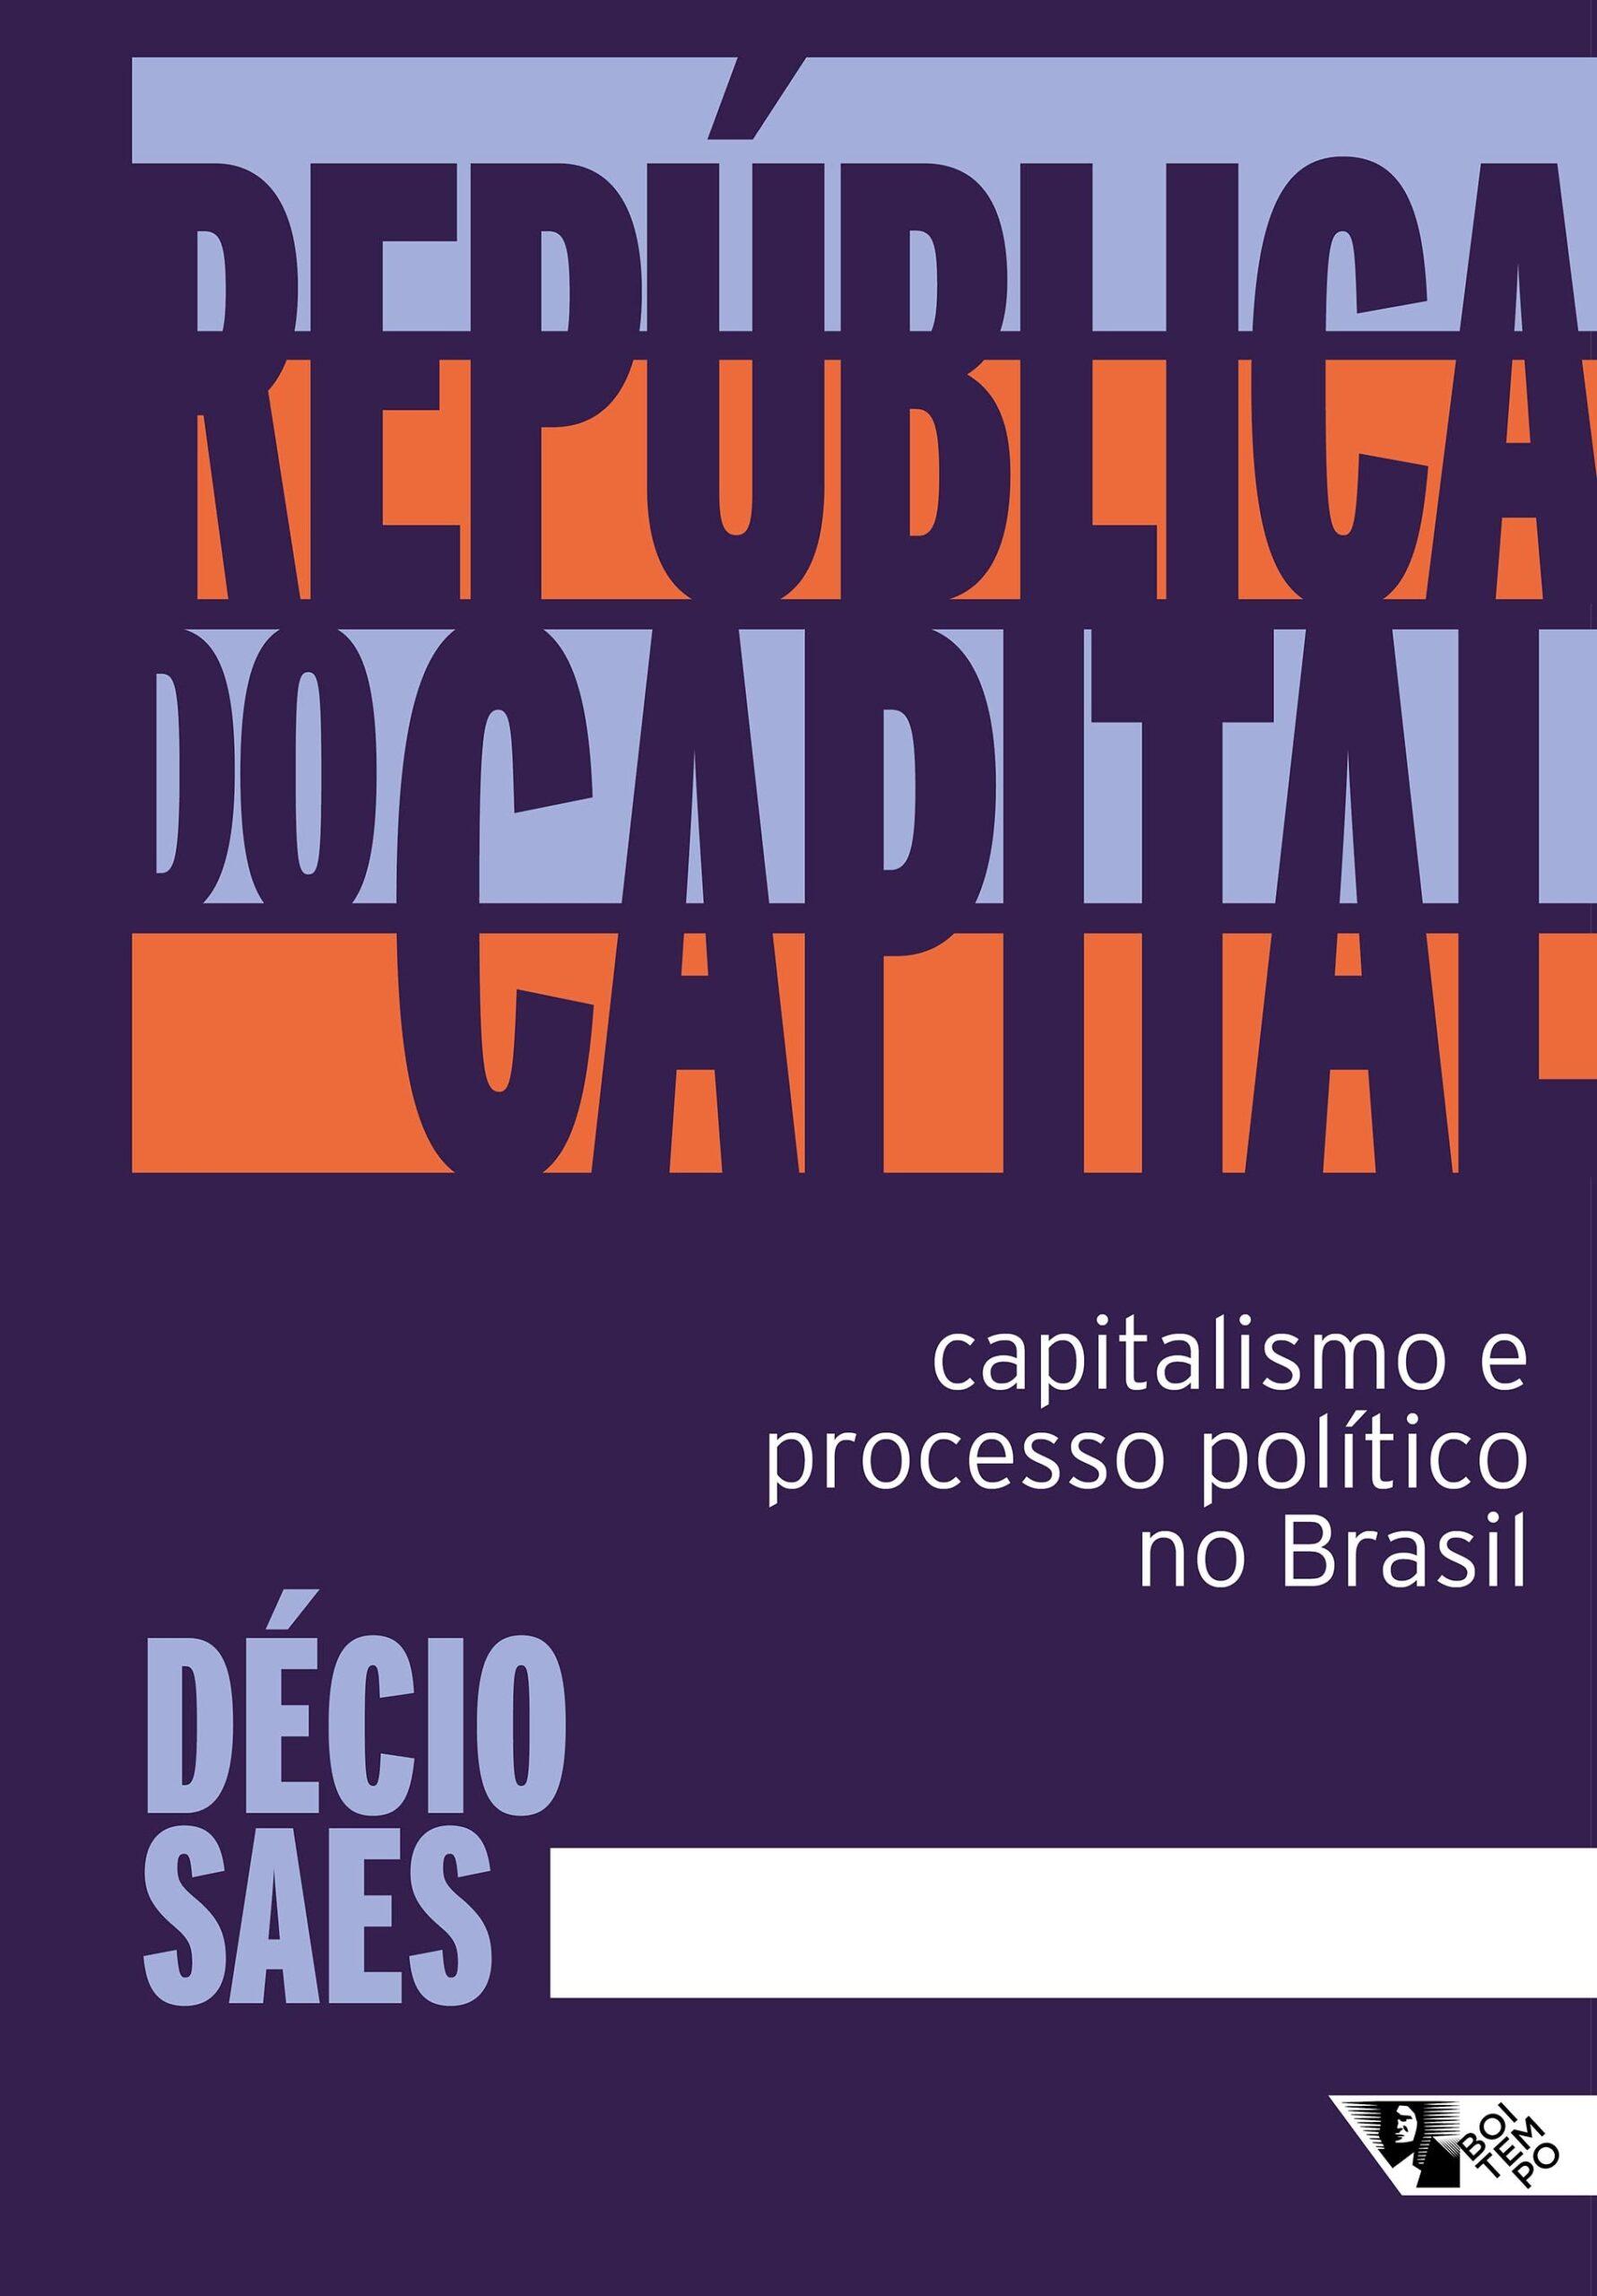 República do capital: capitalismo e processo político no Brasil” ganha nova edição ampliada